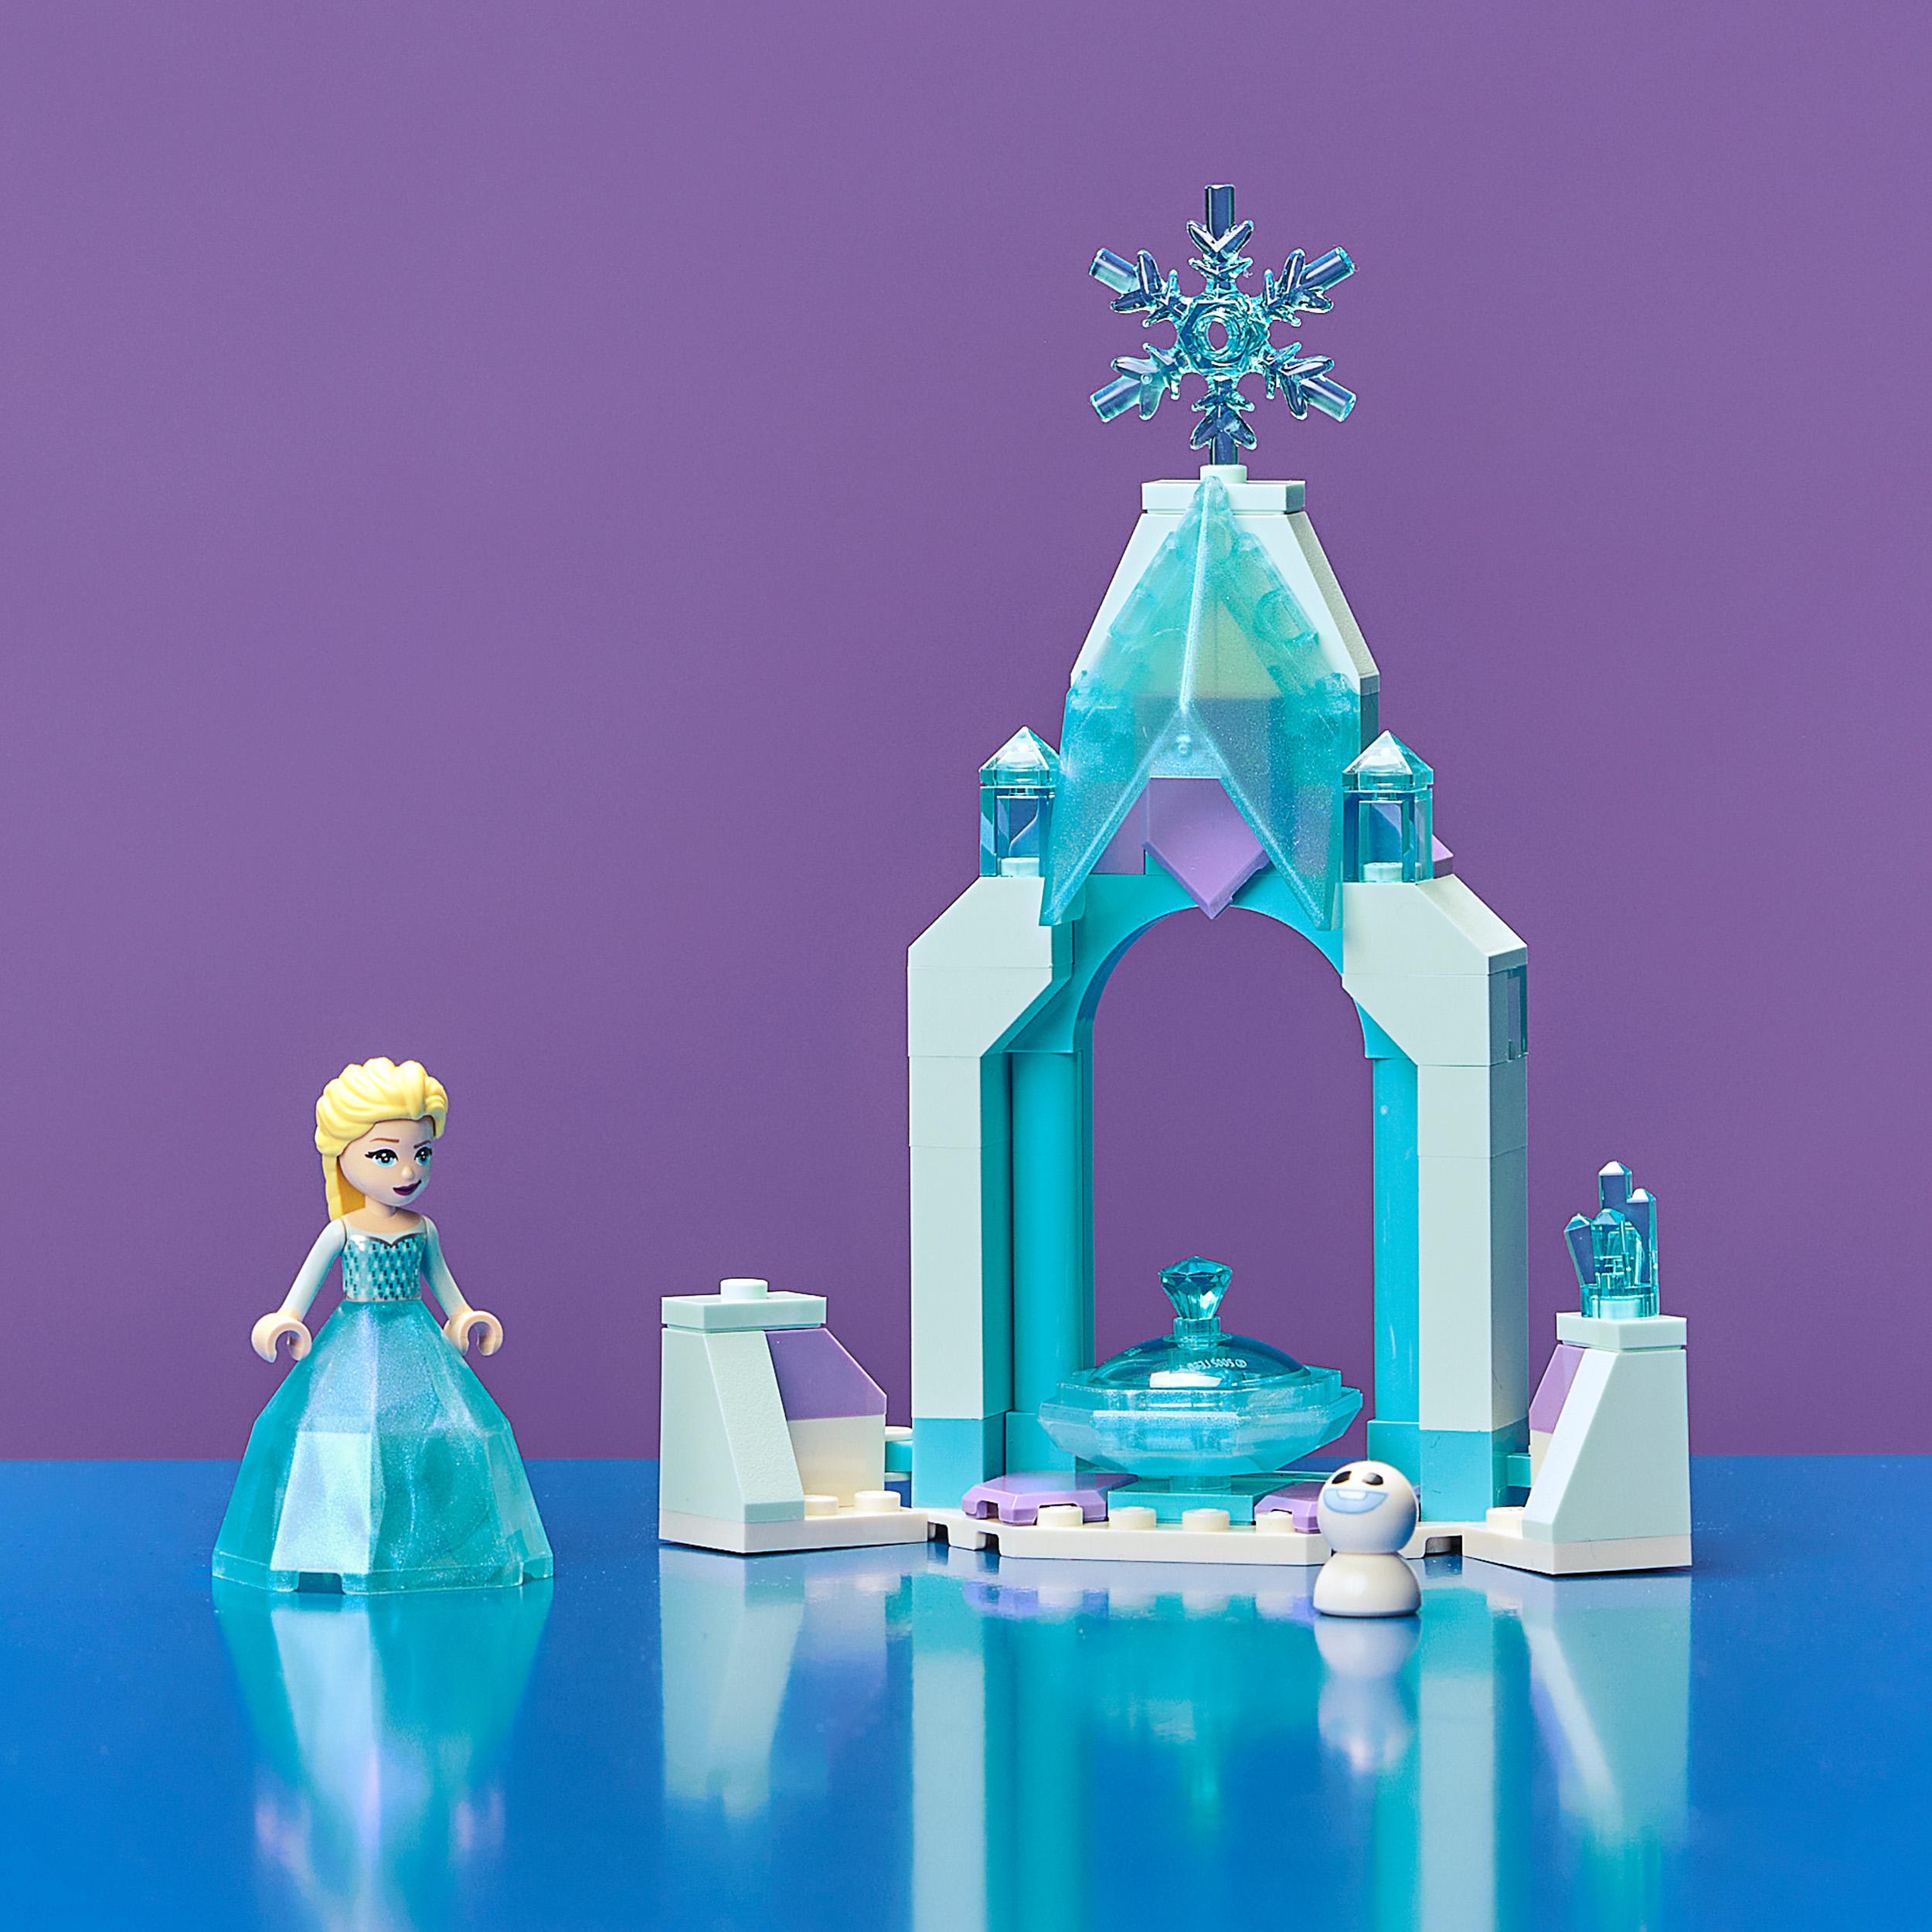 Lego disney il cortile del castello di elsa, giocattolo con principessa frozen 2, collezione abito diamante, 43199 - LEGO® Disney Frozen, Frozen, Lego